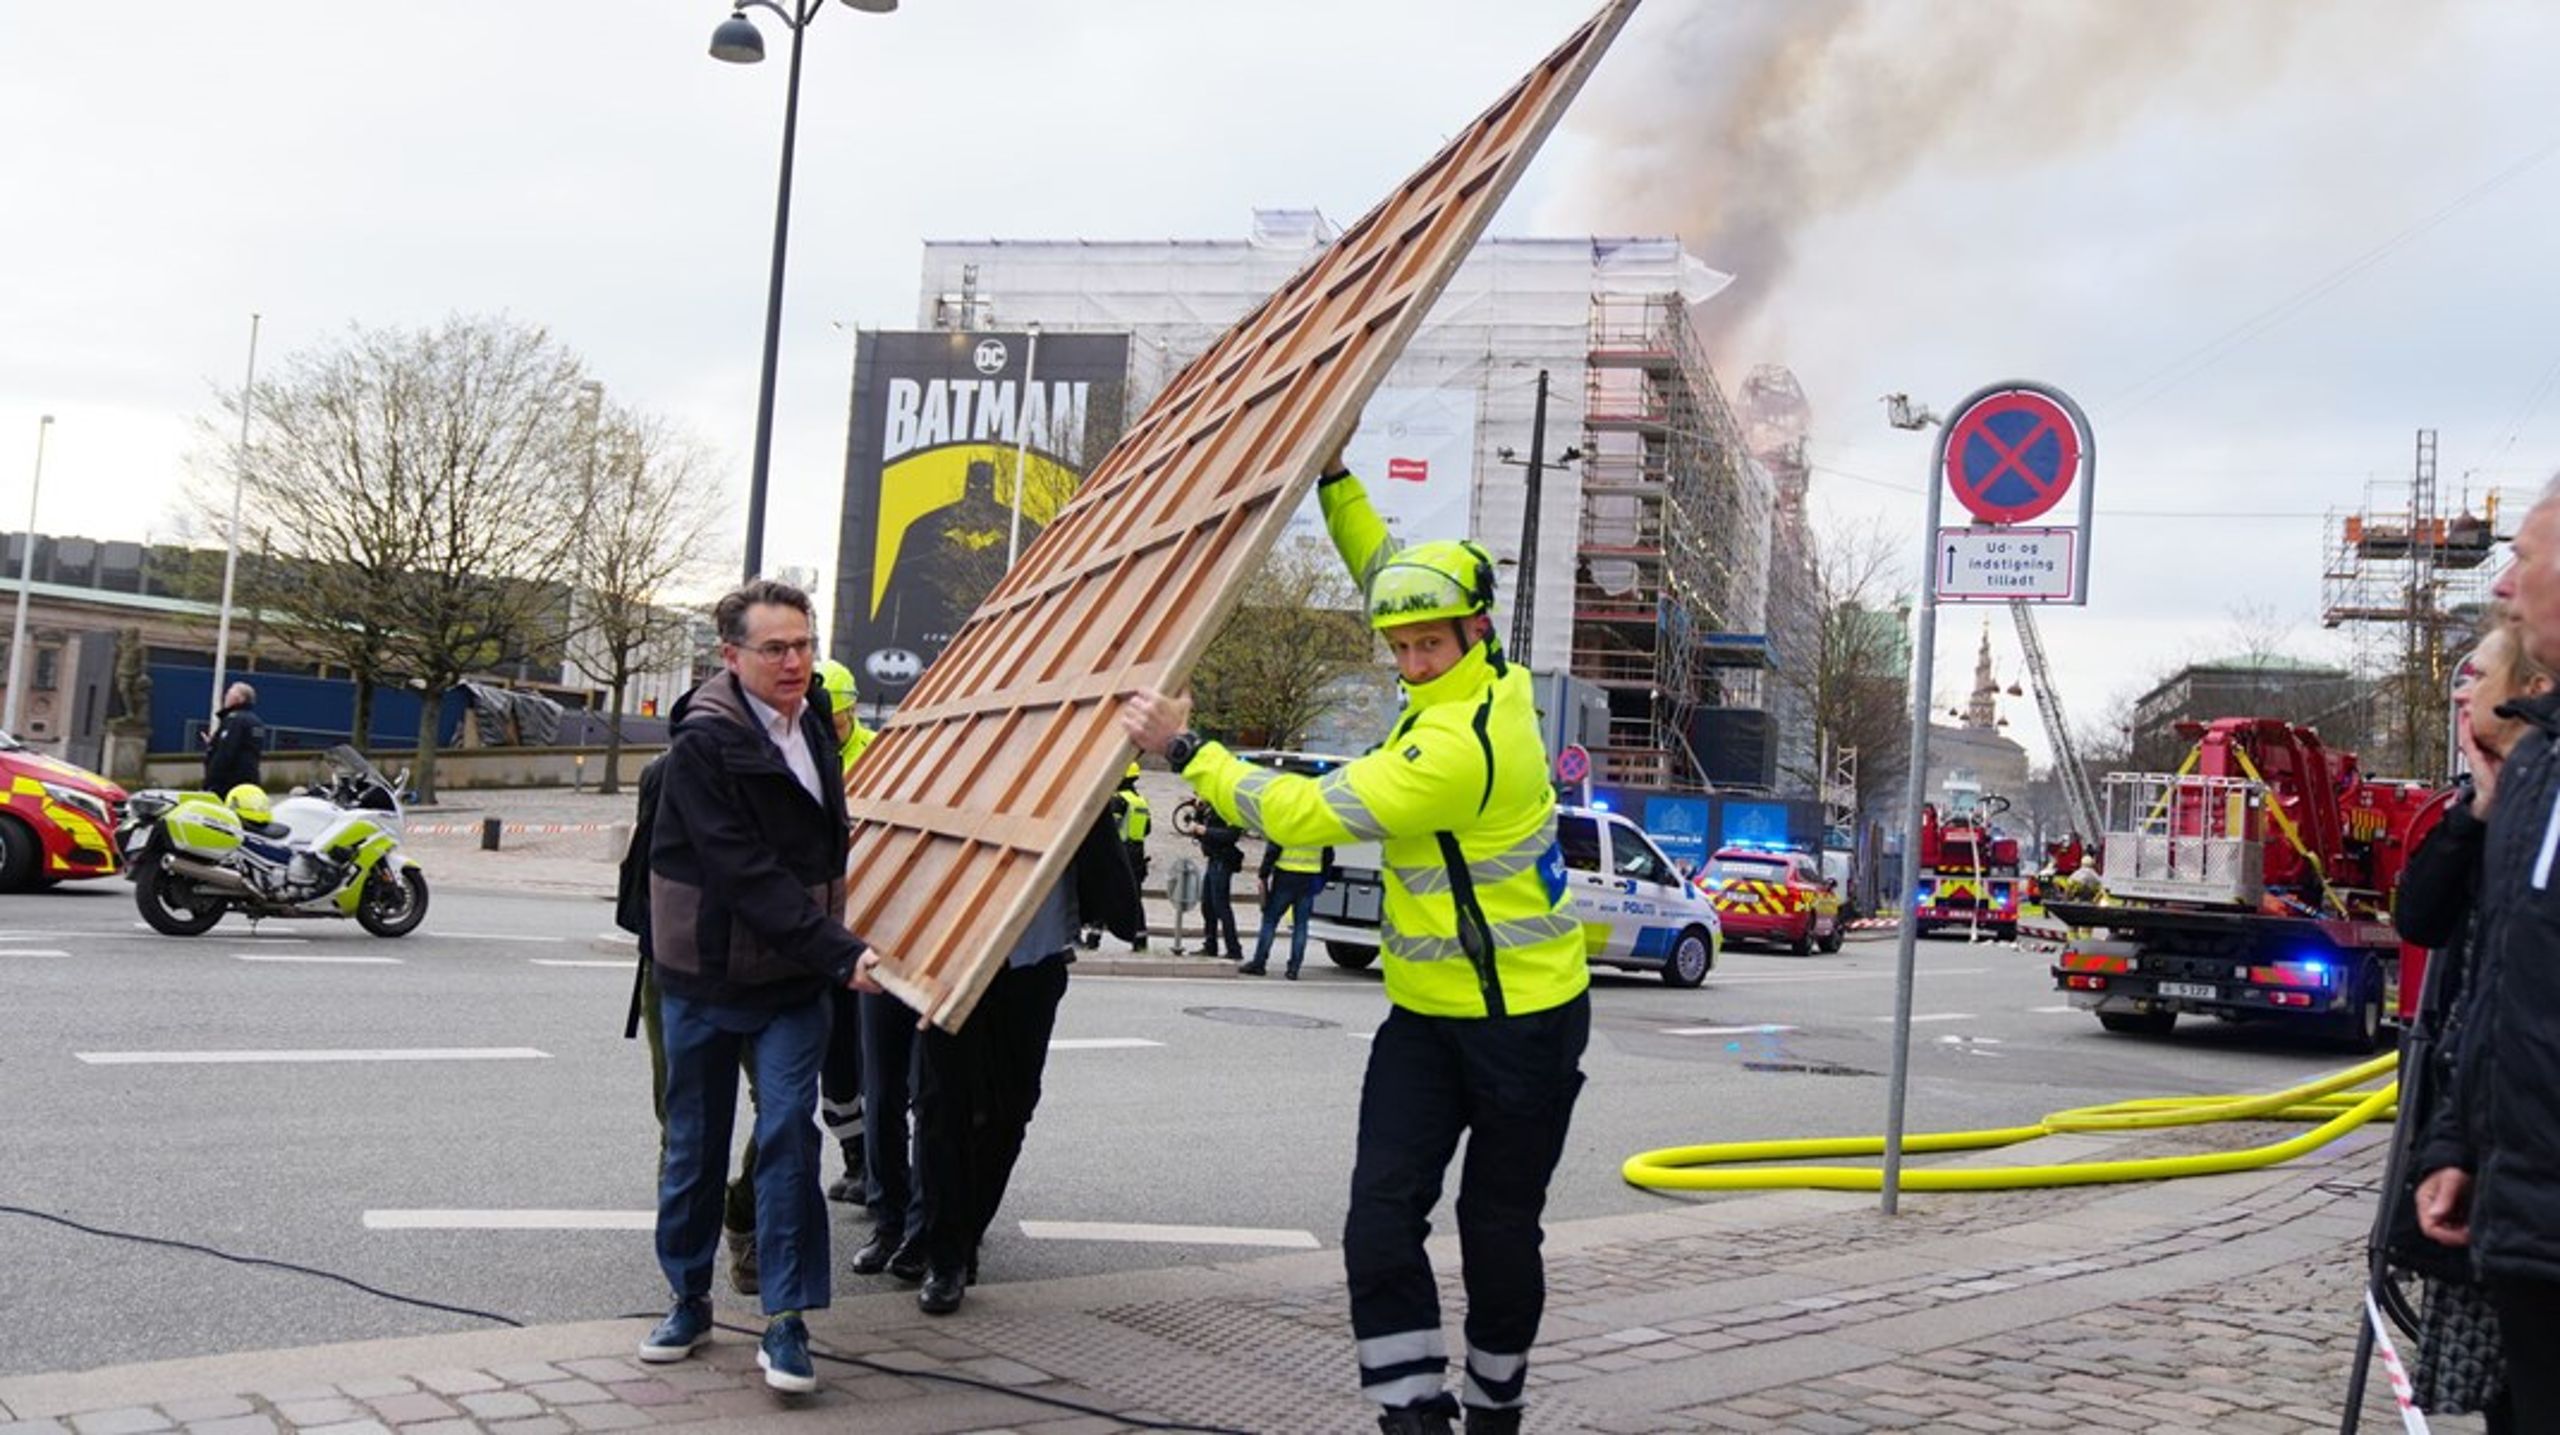 Dansk Erhvervs administrerende direktør, Brian Mikkelsen, hjælper med at bære et maleri ud fra Børsen, der er gået i brand.